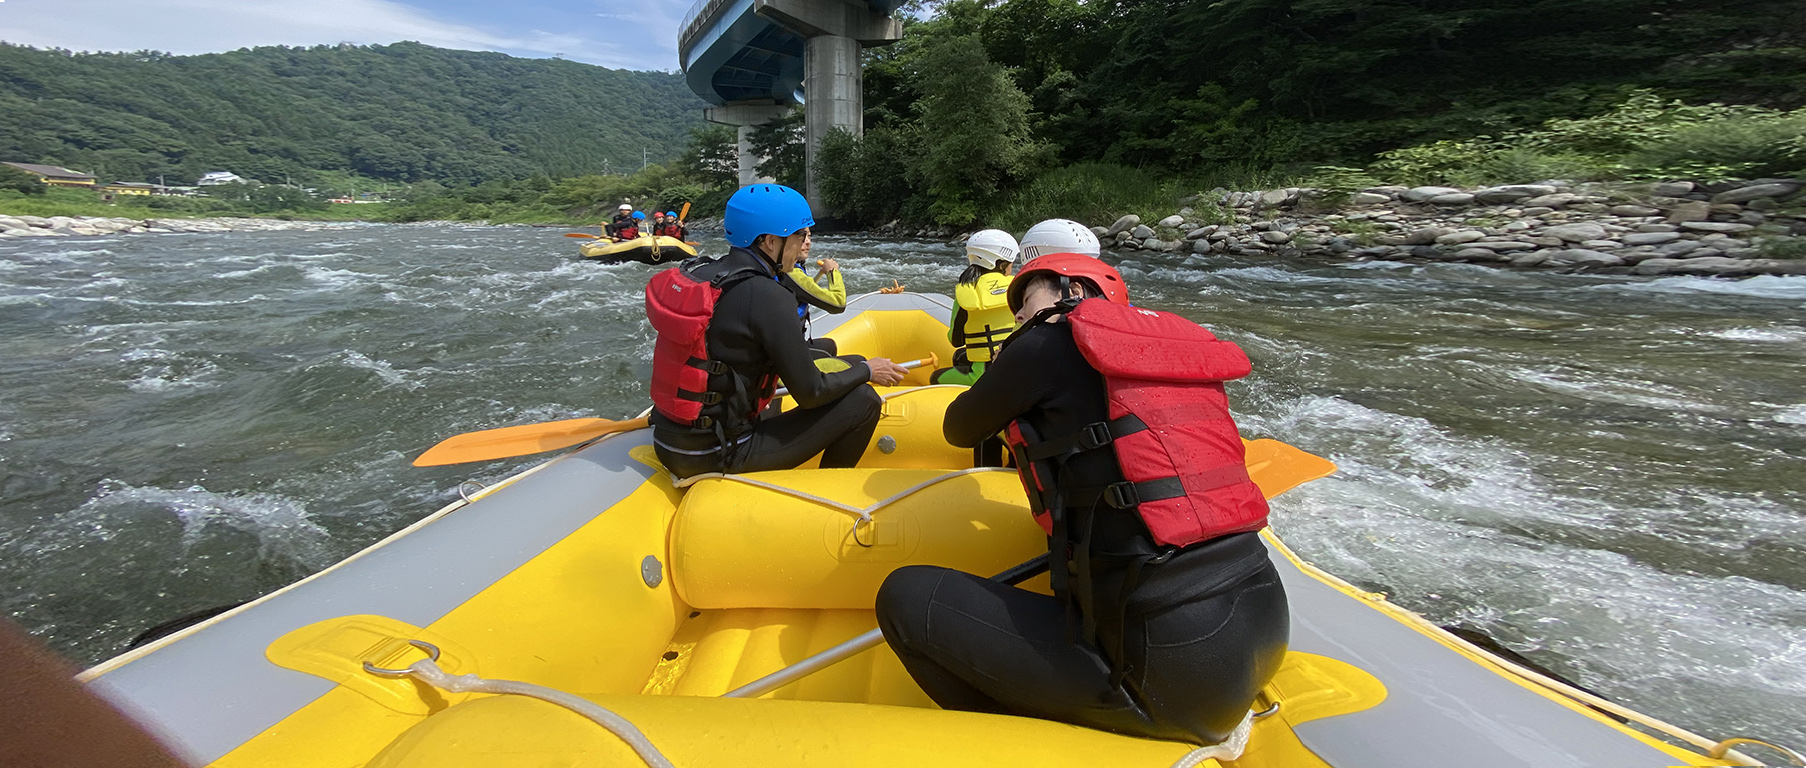 Rafting in minakami tone river with friends, みなかみトーン川で友達とラフティング 